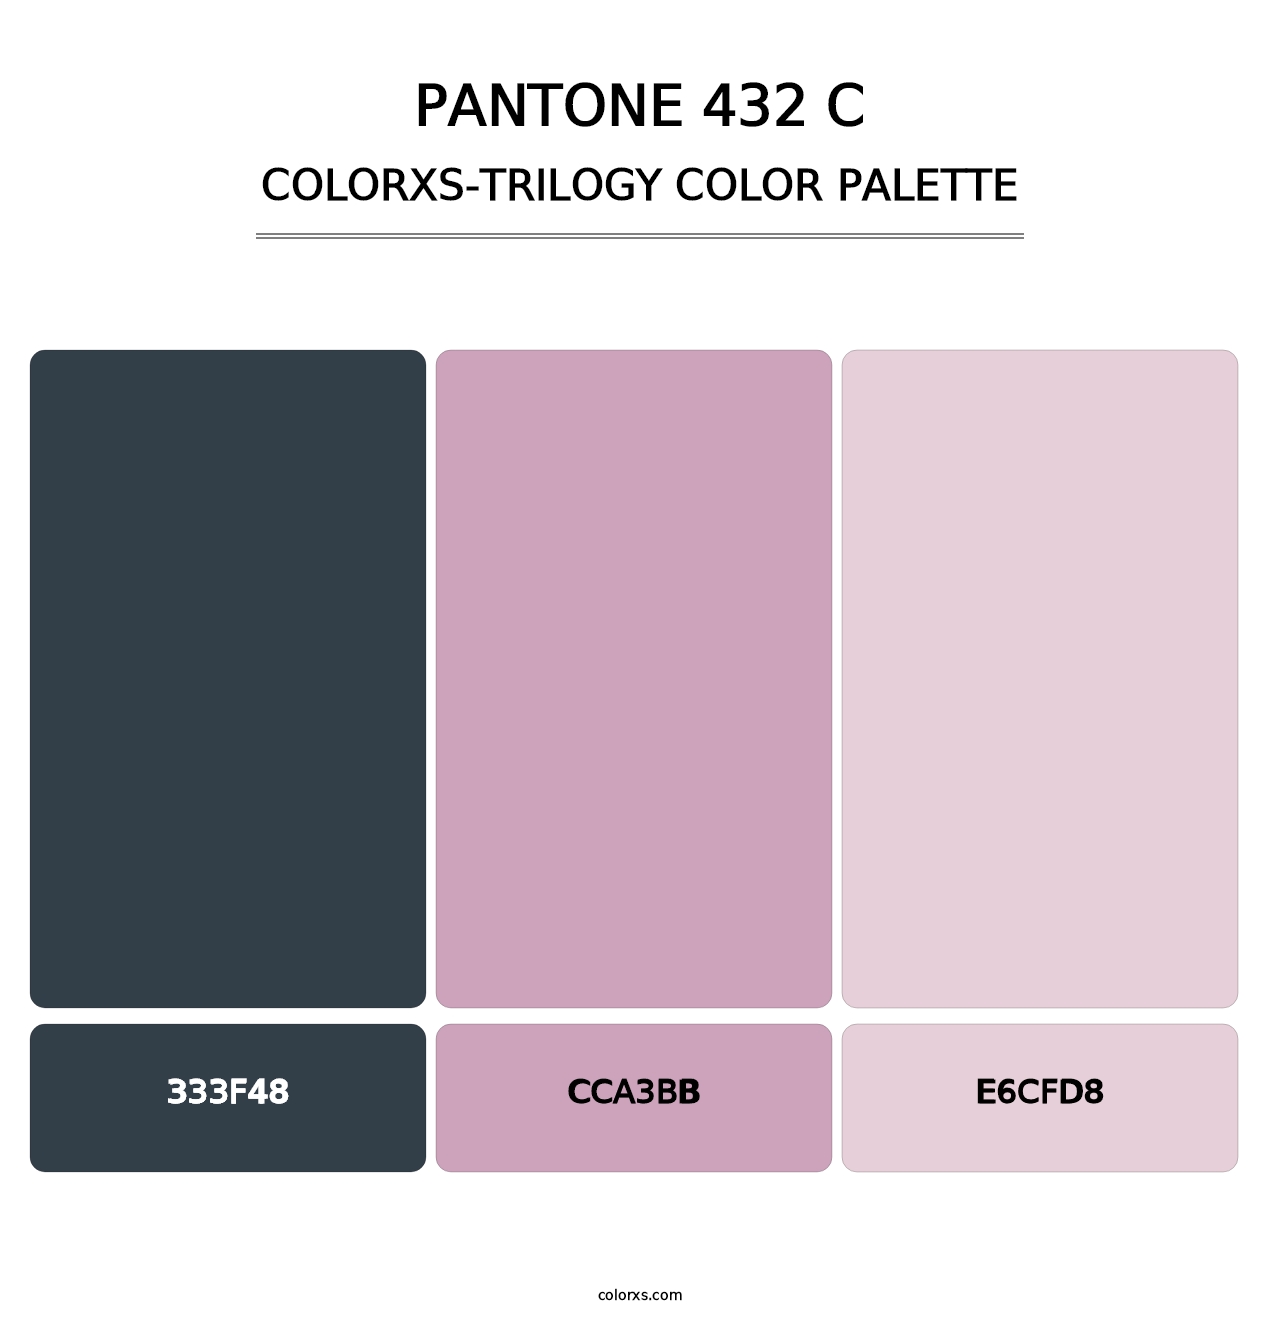 PANTONE 432 C - Colorxs Trilogy Palette